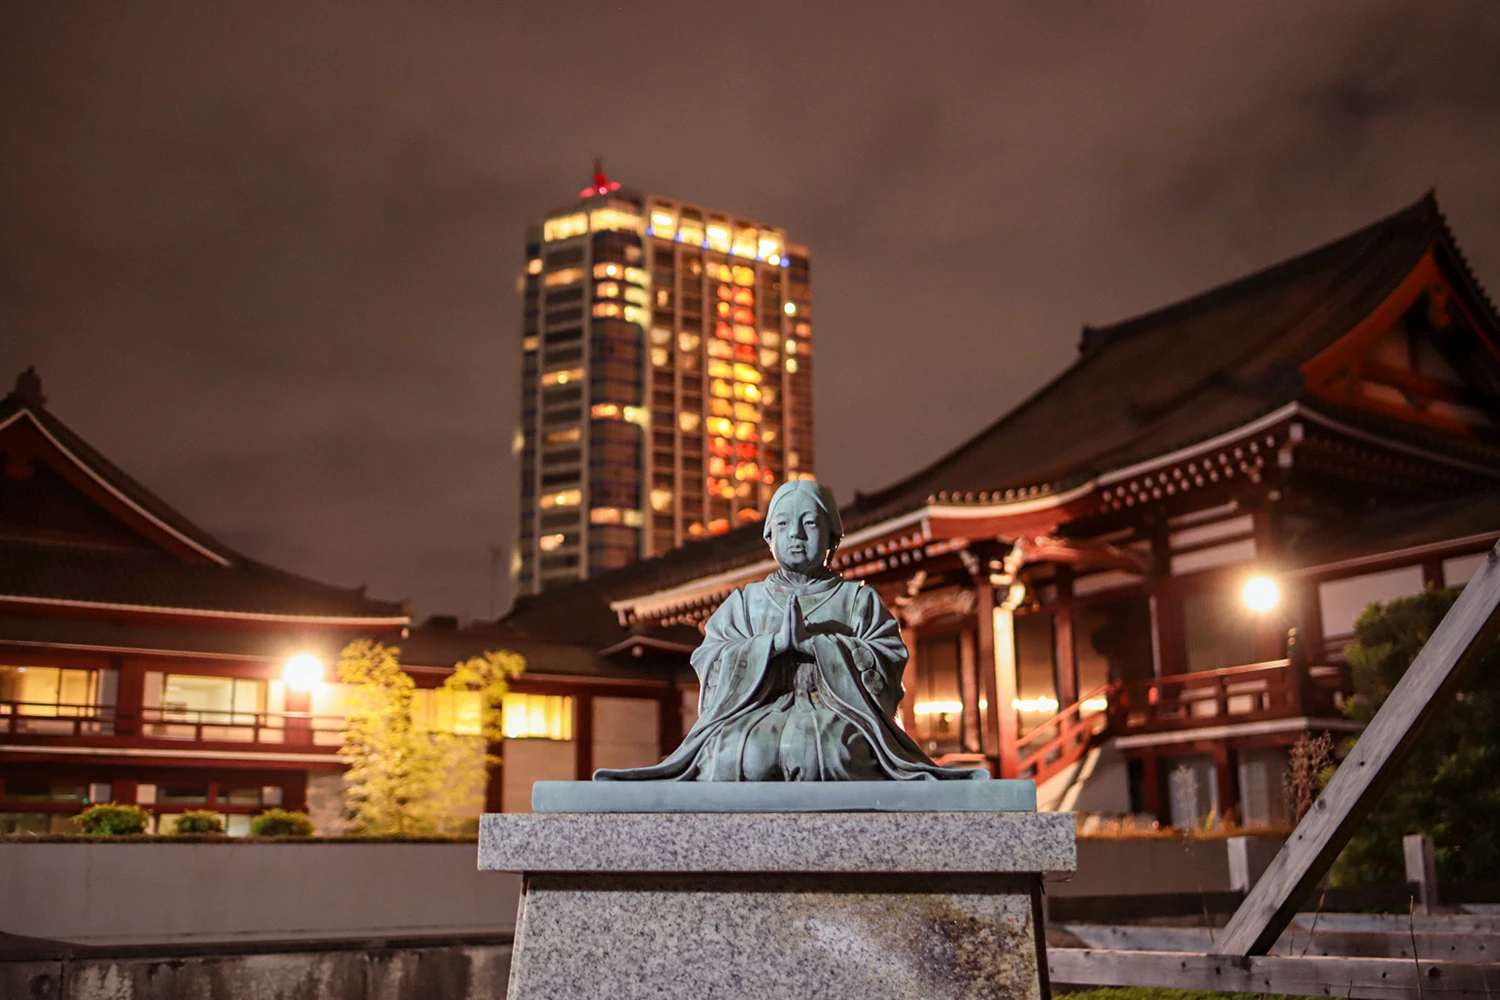 Japan - Zojo-ji Tempel - My Travel Island; Bei einem abendlichen Besuch am Zōjō-ji Tempel kannst du alles ganz menschenleer erkunden.